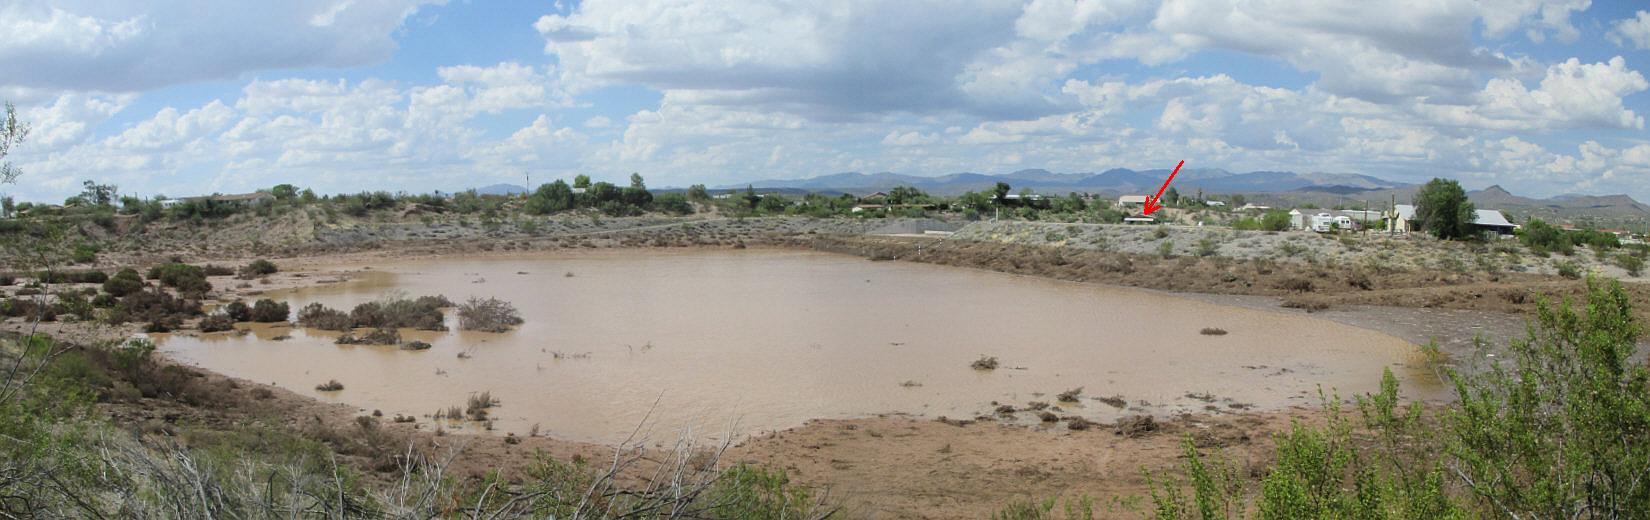 Casandro Dam Basin